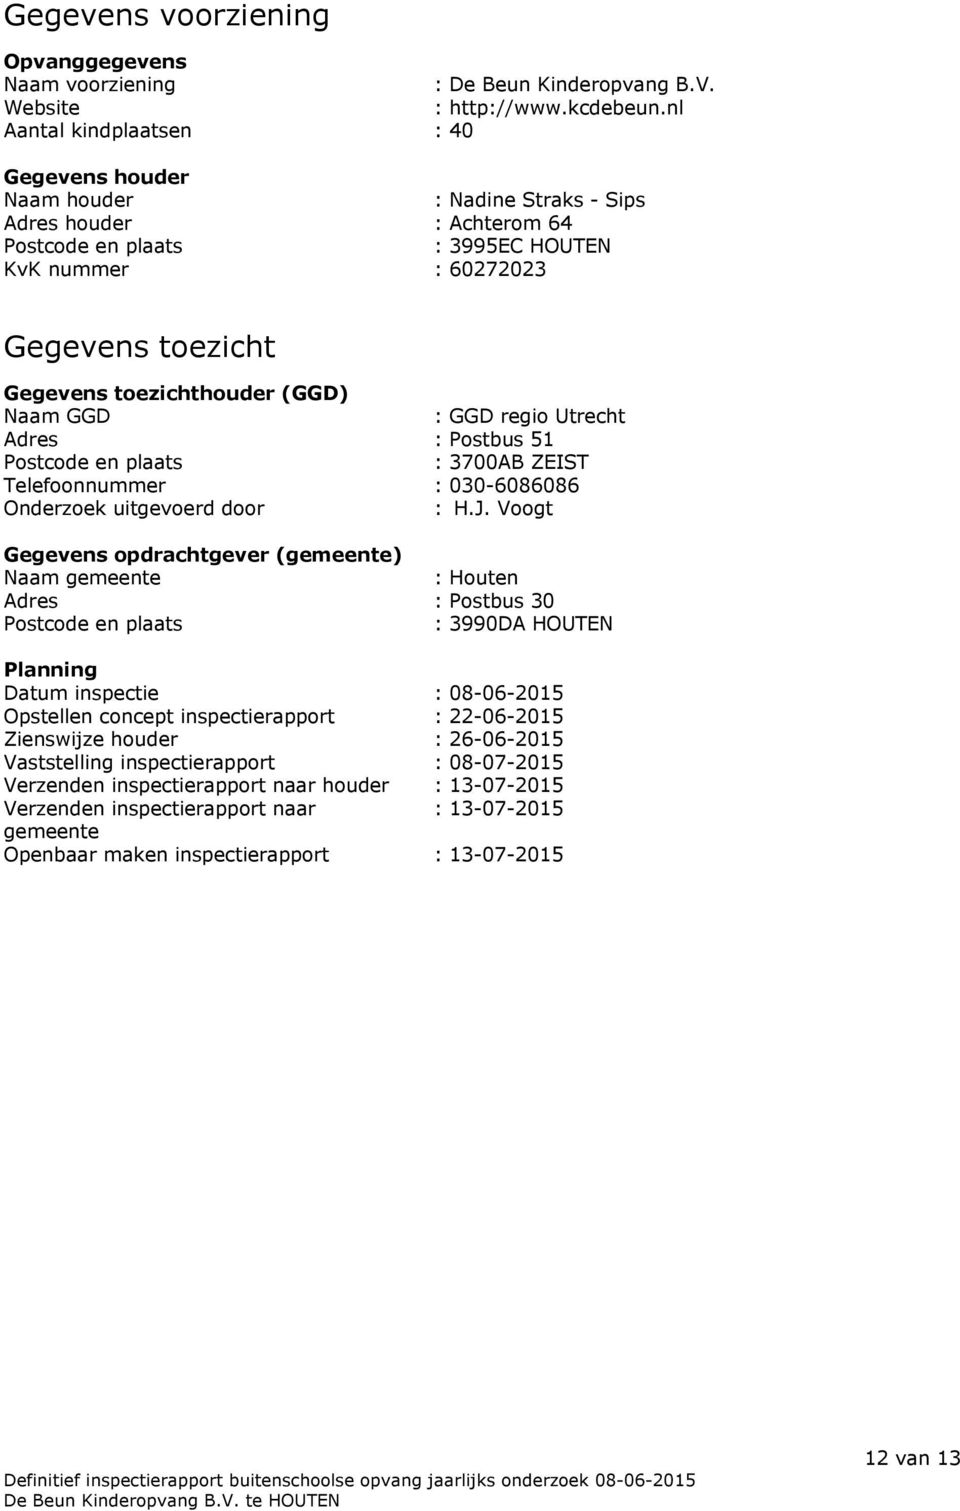 toezichthouder (GGD) Naam GGD : GGD regio Utrecht Adres : Postbus 51 Postcode en plaats : 3700AB ZEIST Telefoonnummer : 030-6086086 Onderzoek uitgevoerd door : H.J.